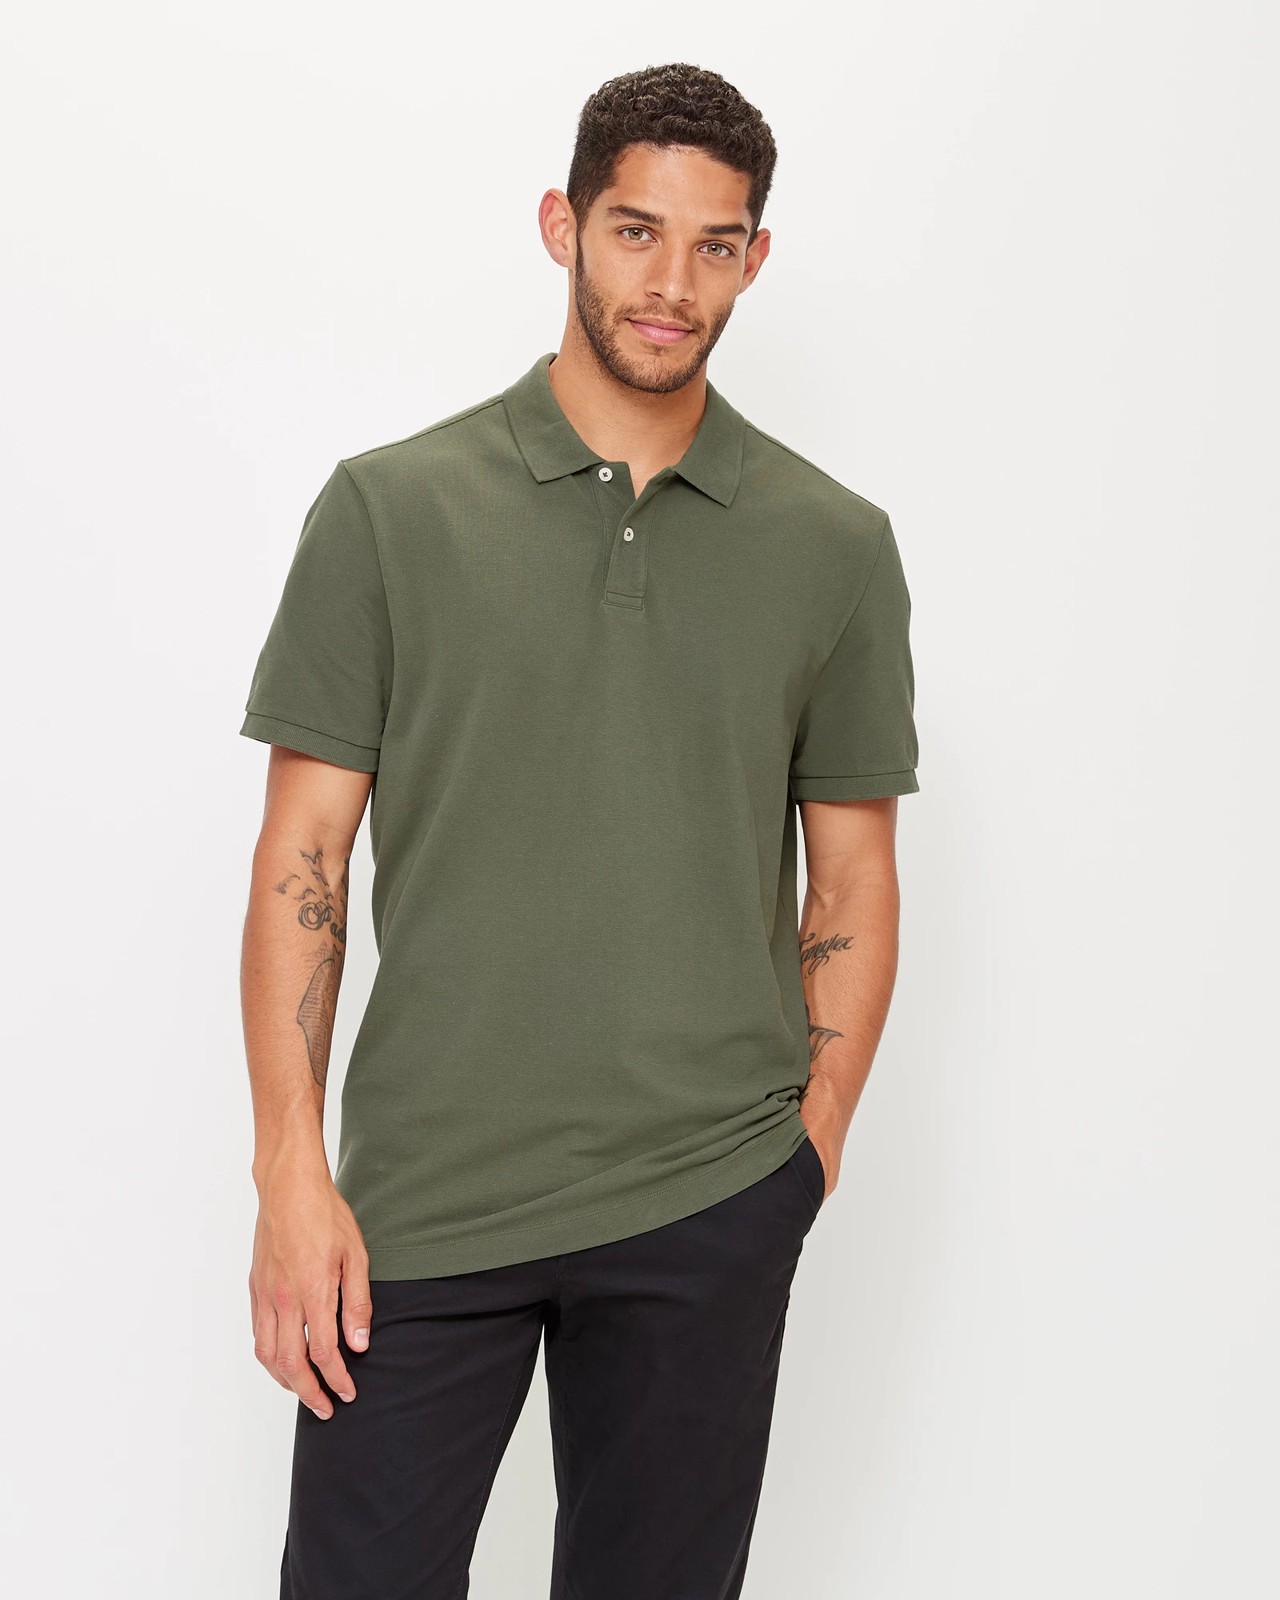 Pique Polo Shirt - Khaki | Target Australia